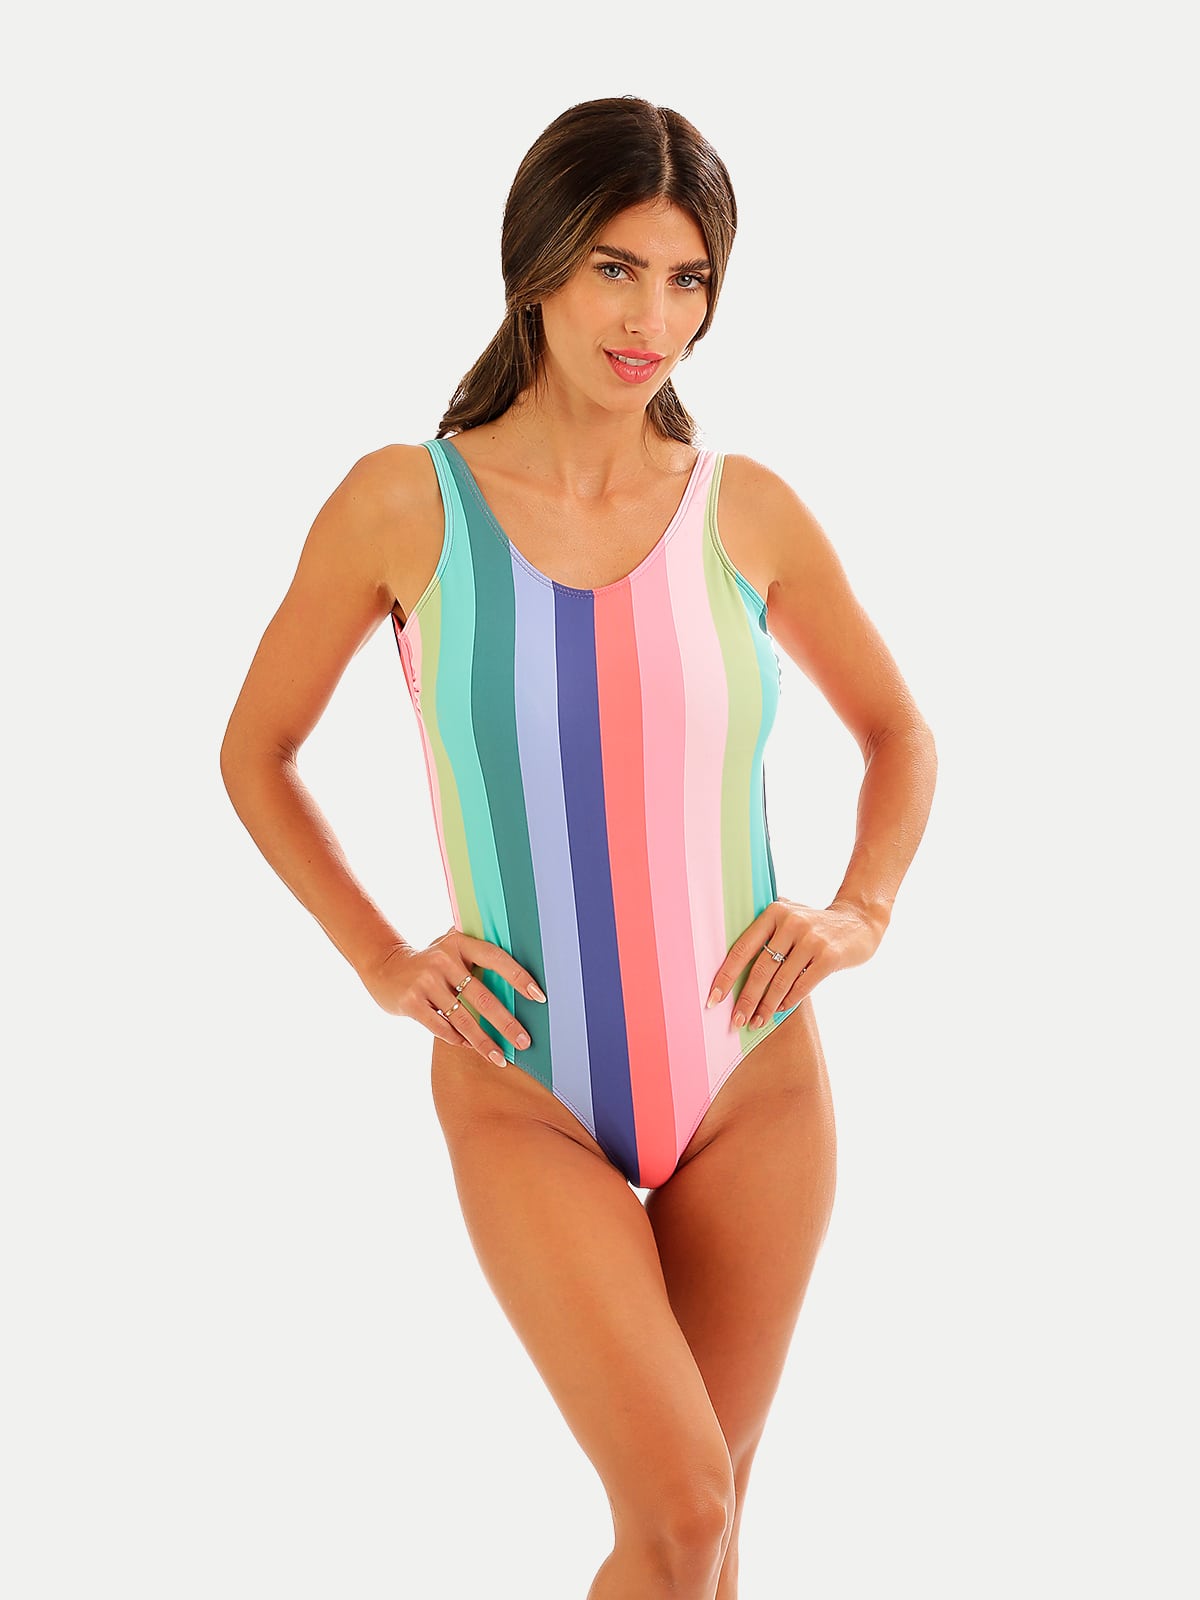 'Candy Stripe' Women Swimwear by 98 Coast Av.